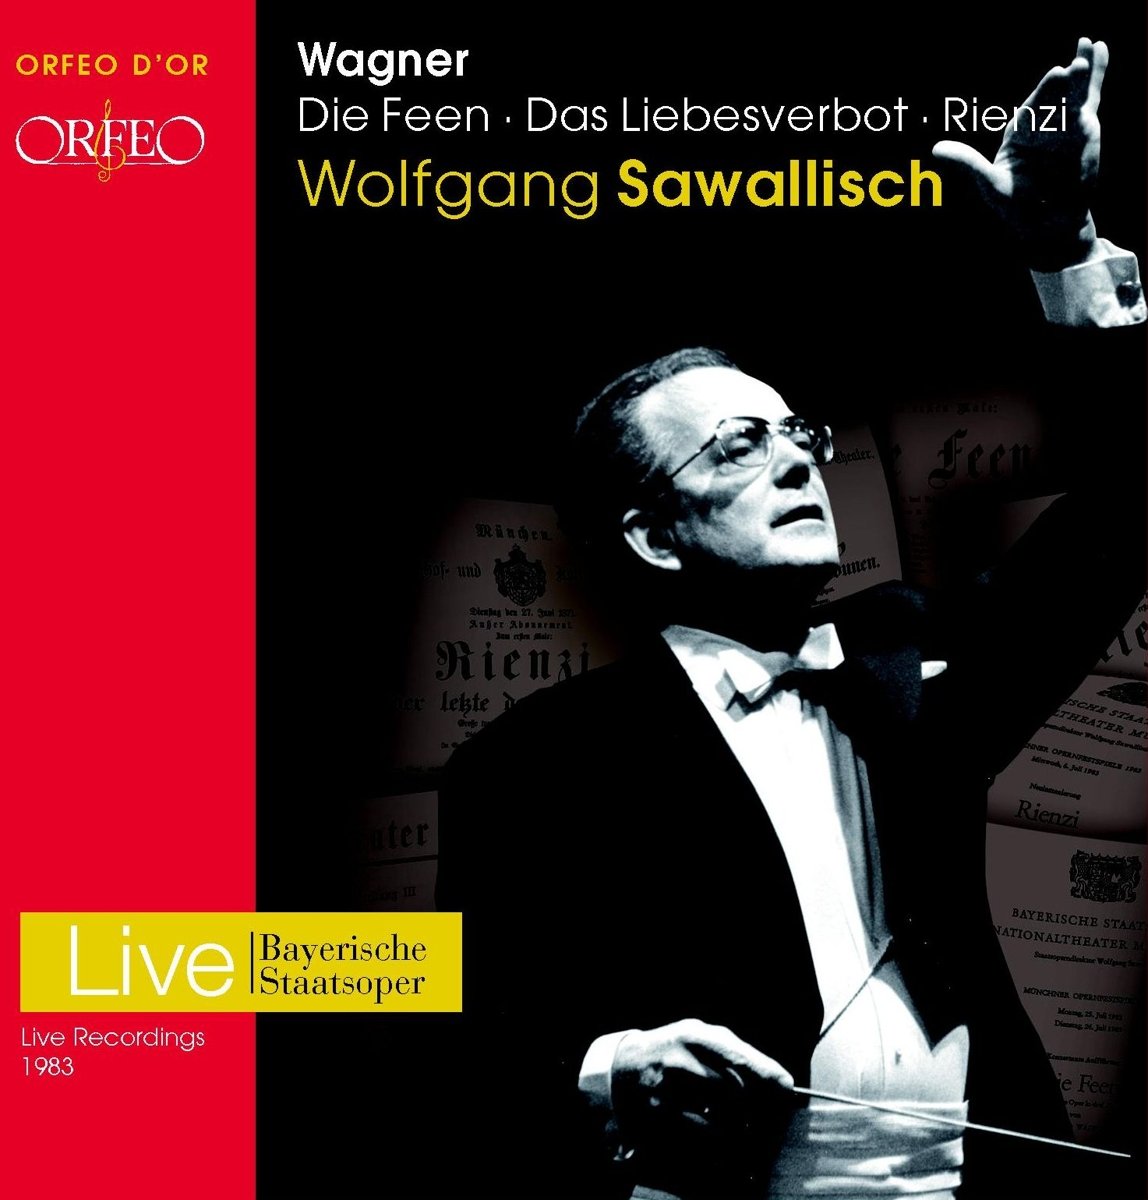 Audio Cd Richard Wagner - Die Feen, Das Liebesverbot (9 Cd) NUOVO SIGILLATO, EDIZIONE DEL 24/05/2013 SUBITO DISPONIBILE